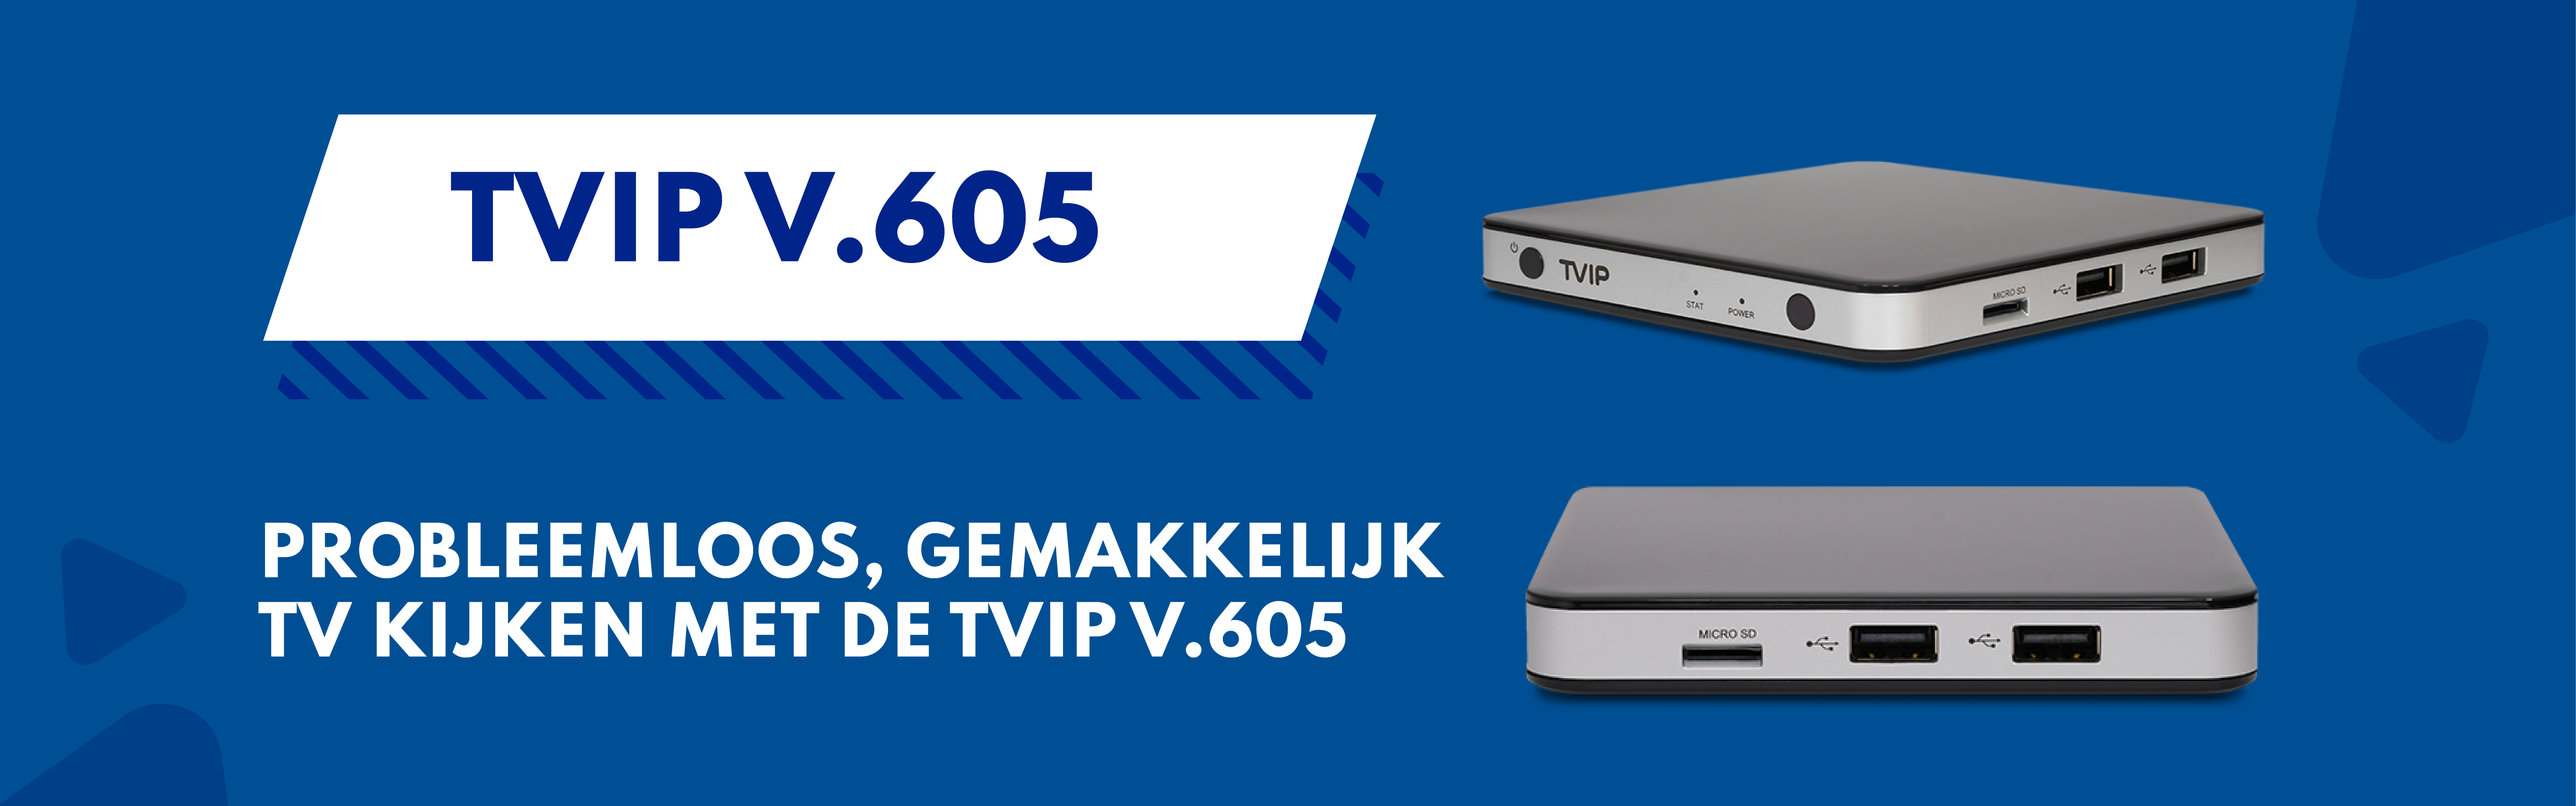 Запуск IPTV на приставке TVIP S-Box v.605